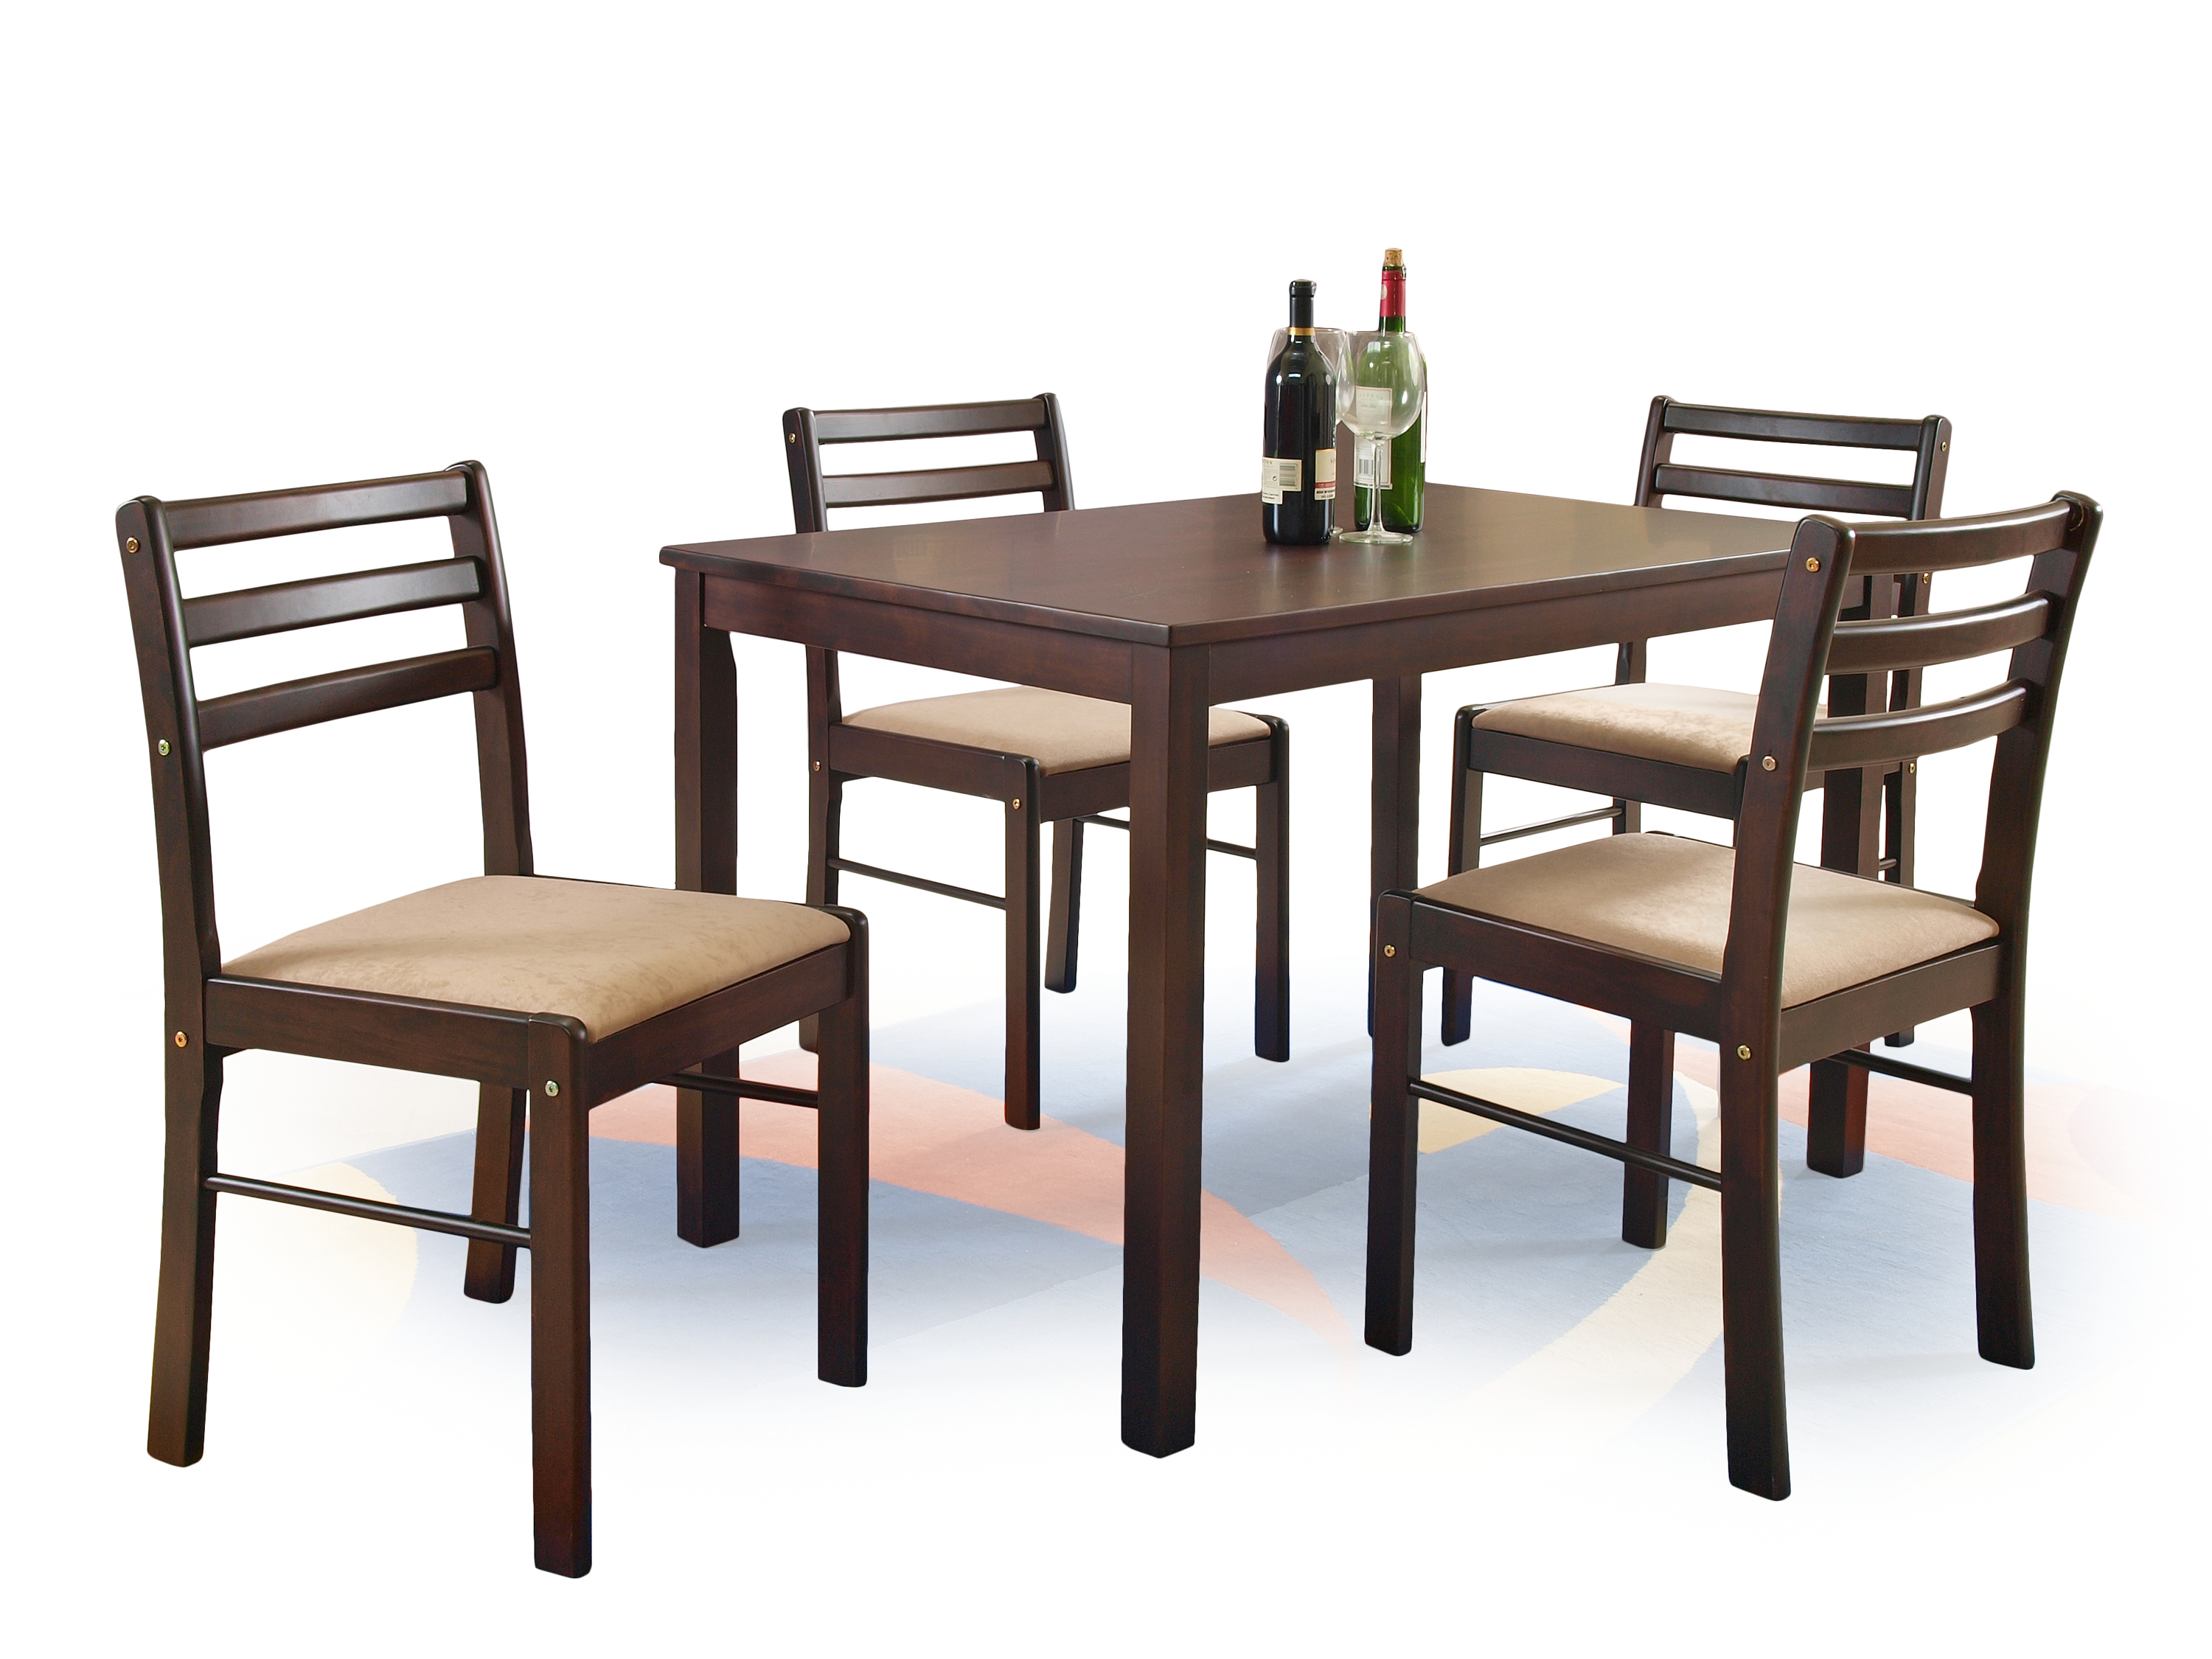 Купить кухонные стулья комплект. Обеденный набор Halmar Faust (стол + 4 стула). Комплект столовой мебели Halmar Cordoba (стол + 4 стула, дуб). Комплект обеденный Халмар. Мебель stol stul.